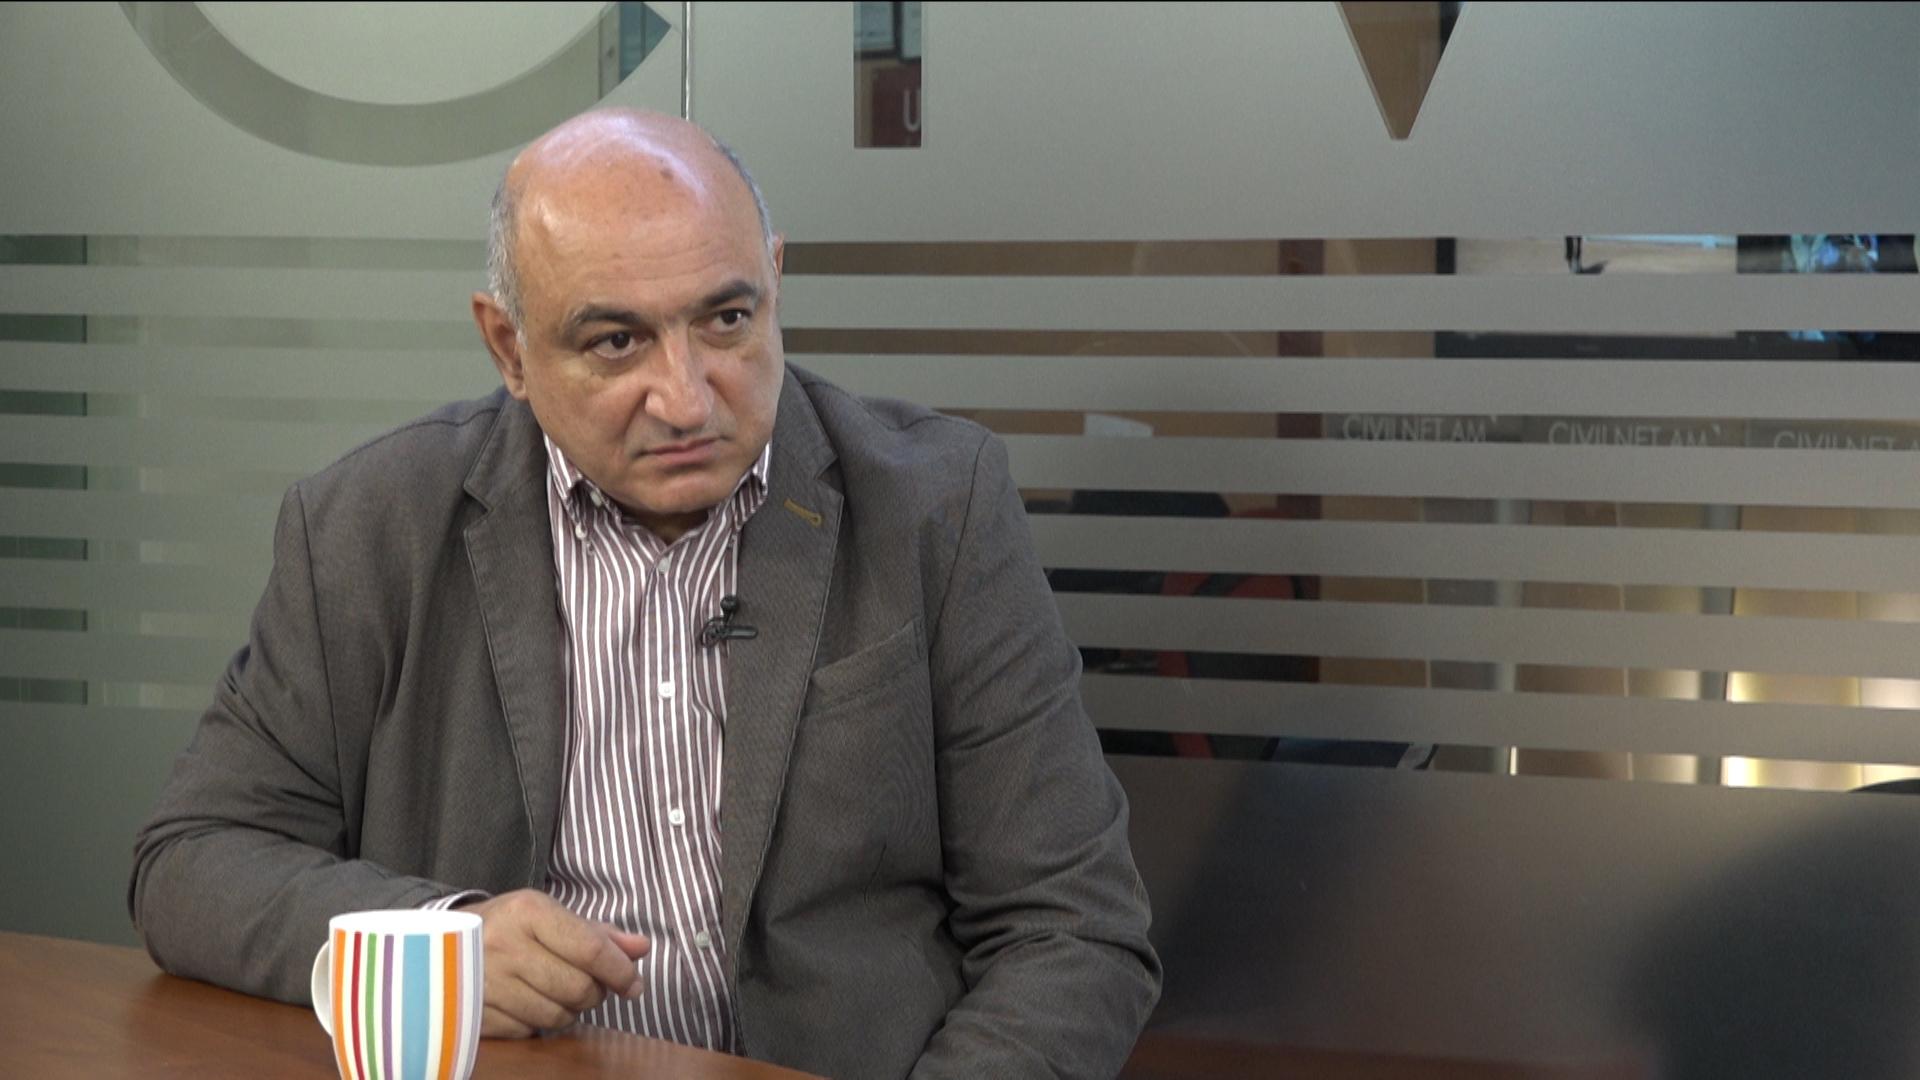 Հայաստան-ԵՄ փաստաթուղթը մեր երկրի զարգացման համար կարևոր է. Բորիս Նավասարդյան